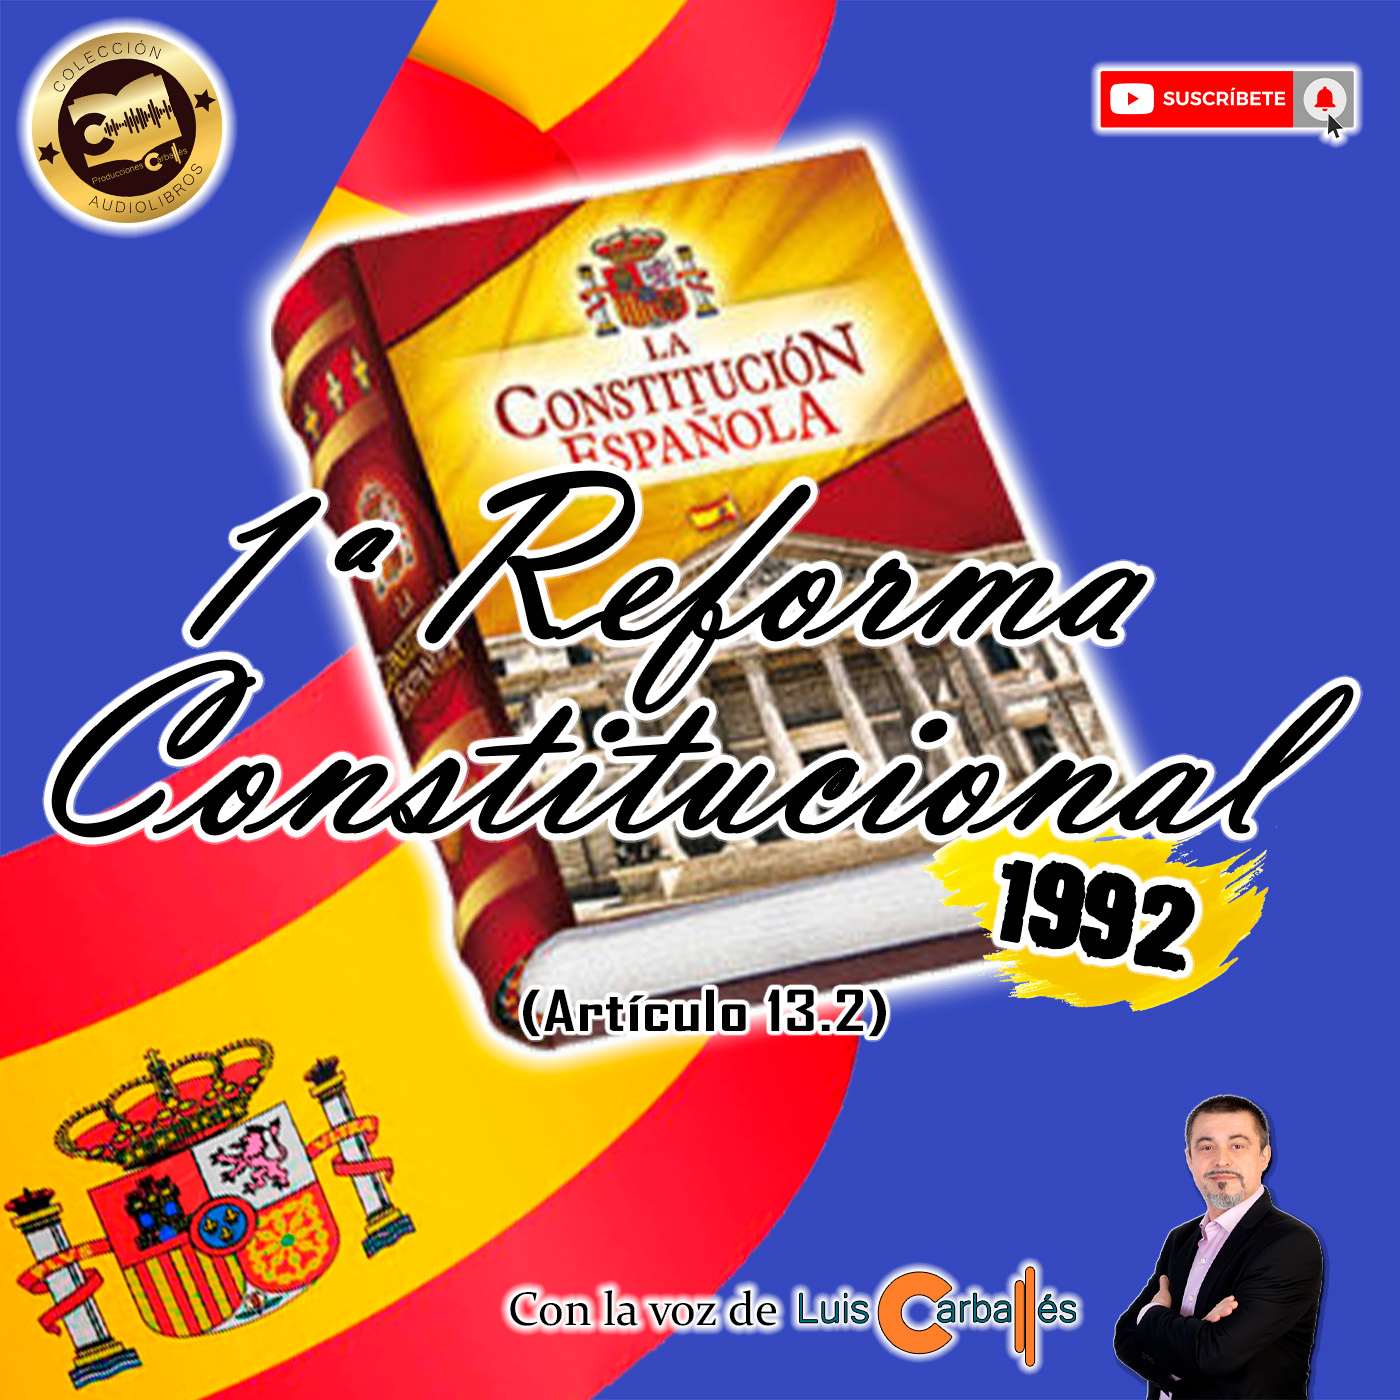 Reforma Constitucional del Artículo 13.2 de la Constitución Española de 1992